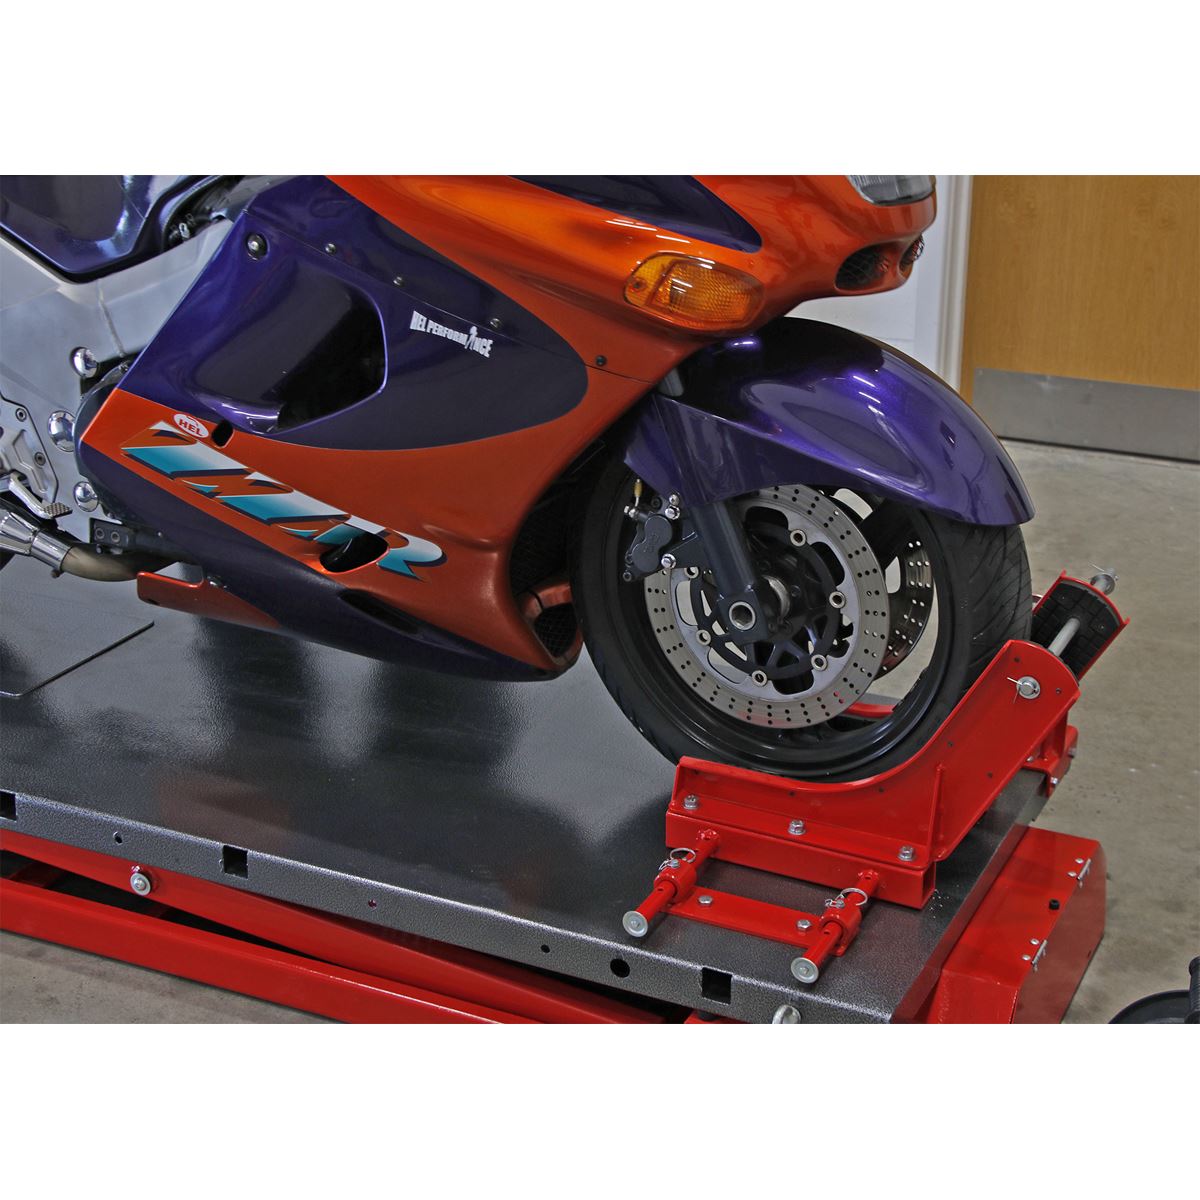 Sealey Motorcycle Lift 680kg Capacity Heavy-Duty Electro/Hydraulic